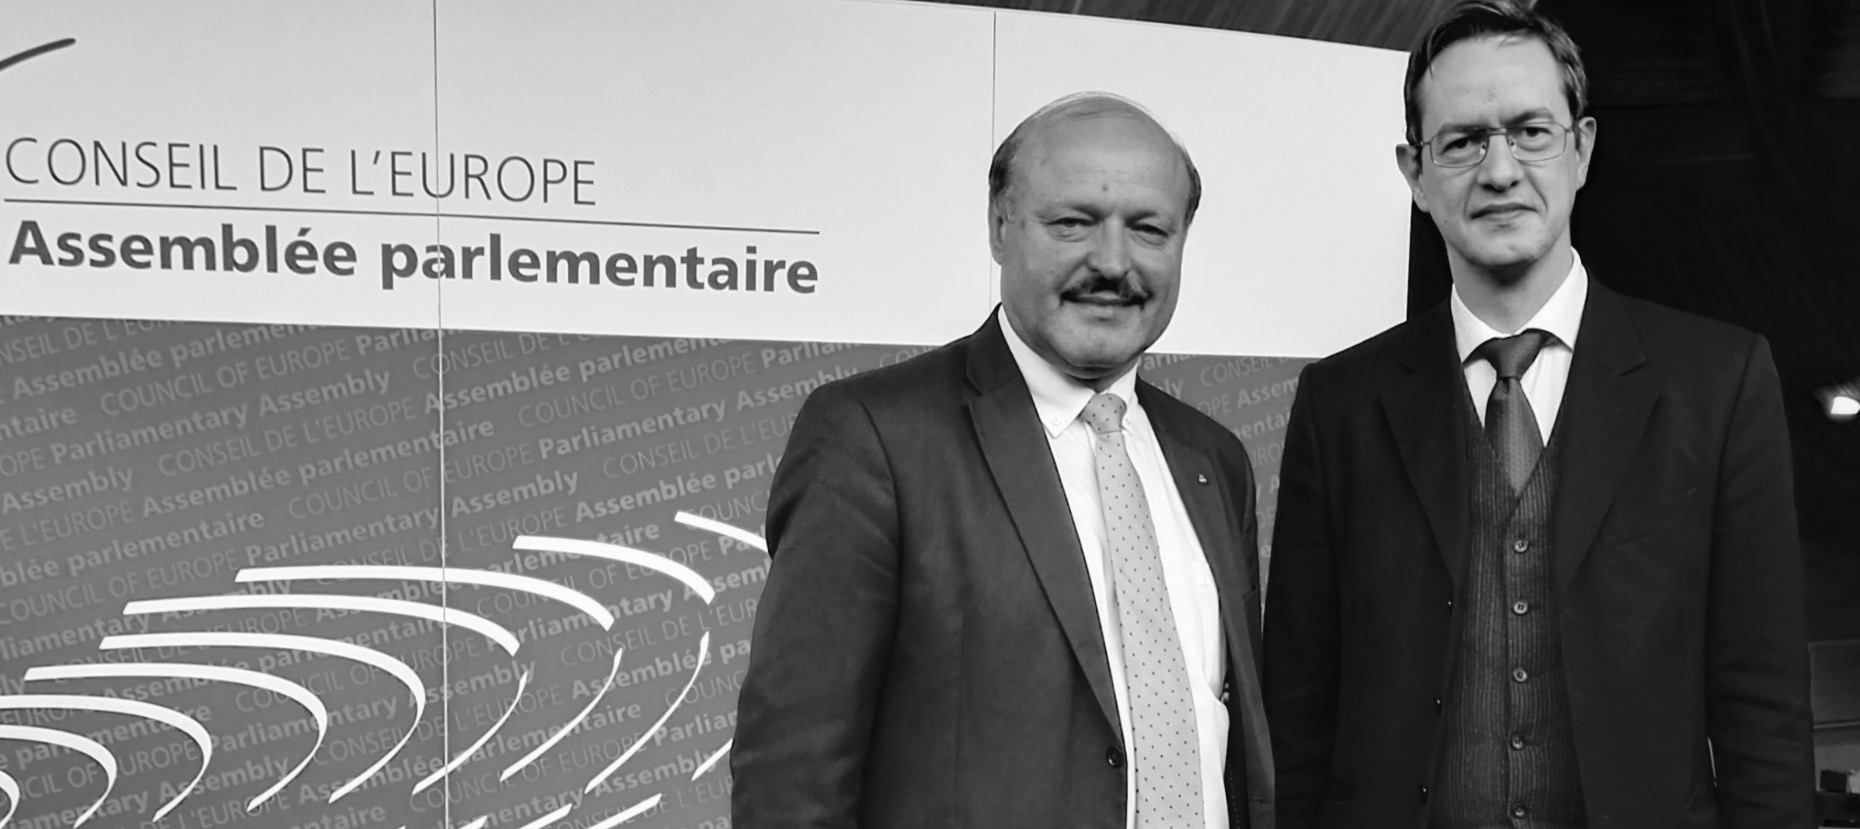 EIFRF Président Eric Roux with Rapporteur Valeriu Ghiletchi